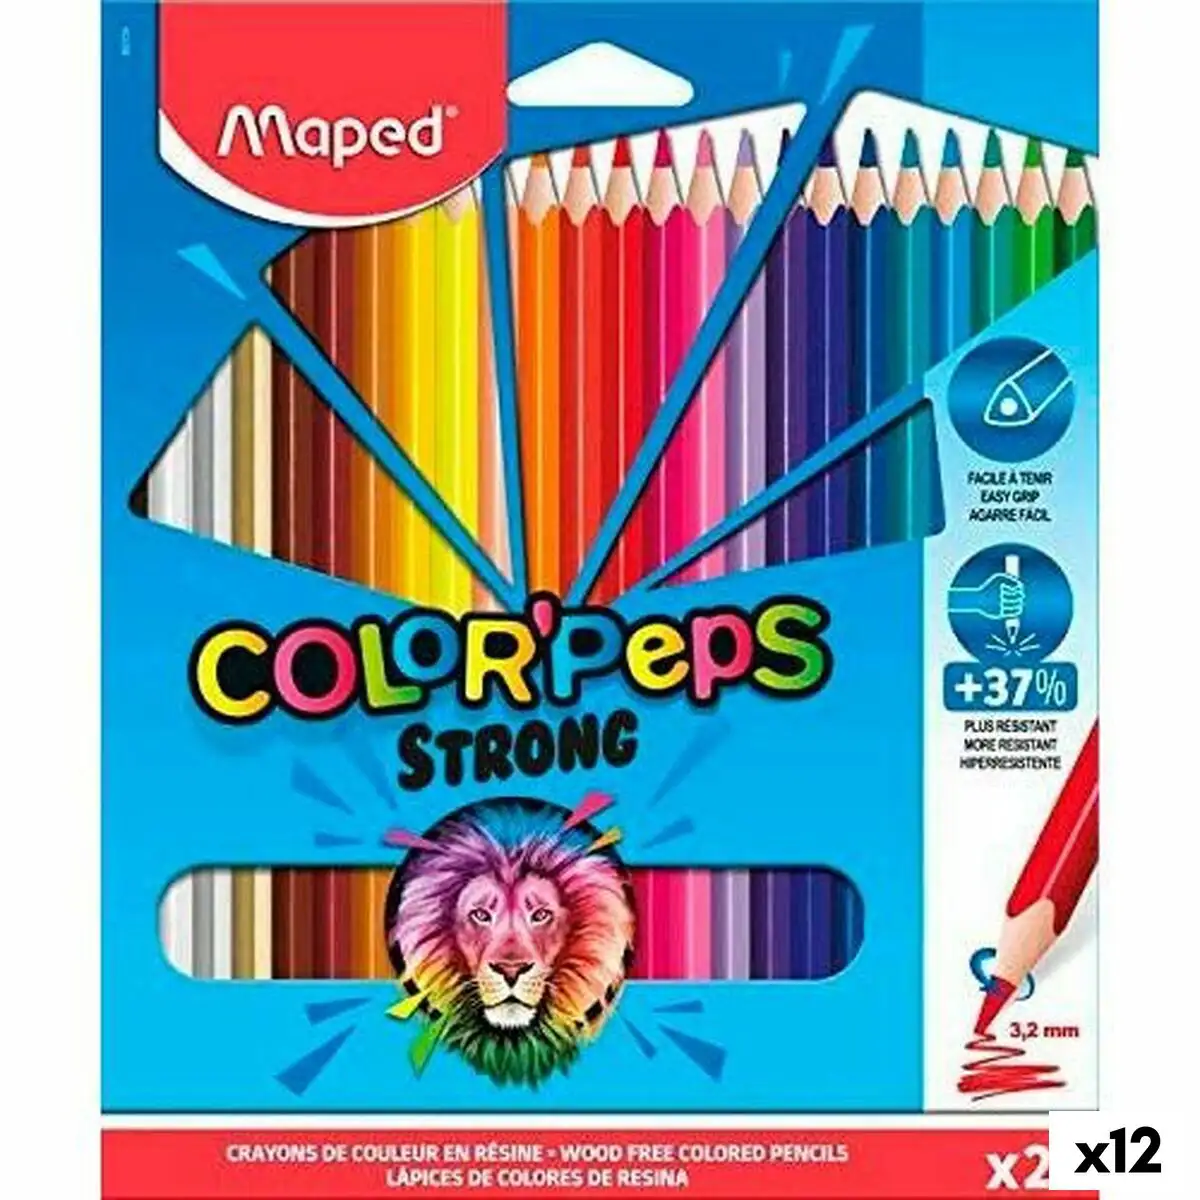 Crayons de couleur maped color peps strong multicouleur 24 pieces 12 unites _8742. DIAYTAR SENEGAL - Où Chaque Achat Raconte une Histoire. Explorez notre boutique en ligne et créez votre propre narration à travers notre diversité de produits, chacun portant une signification unique.